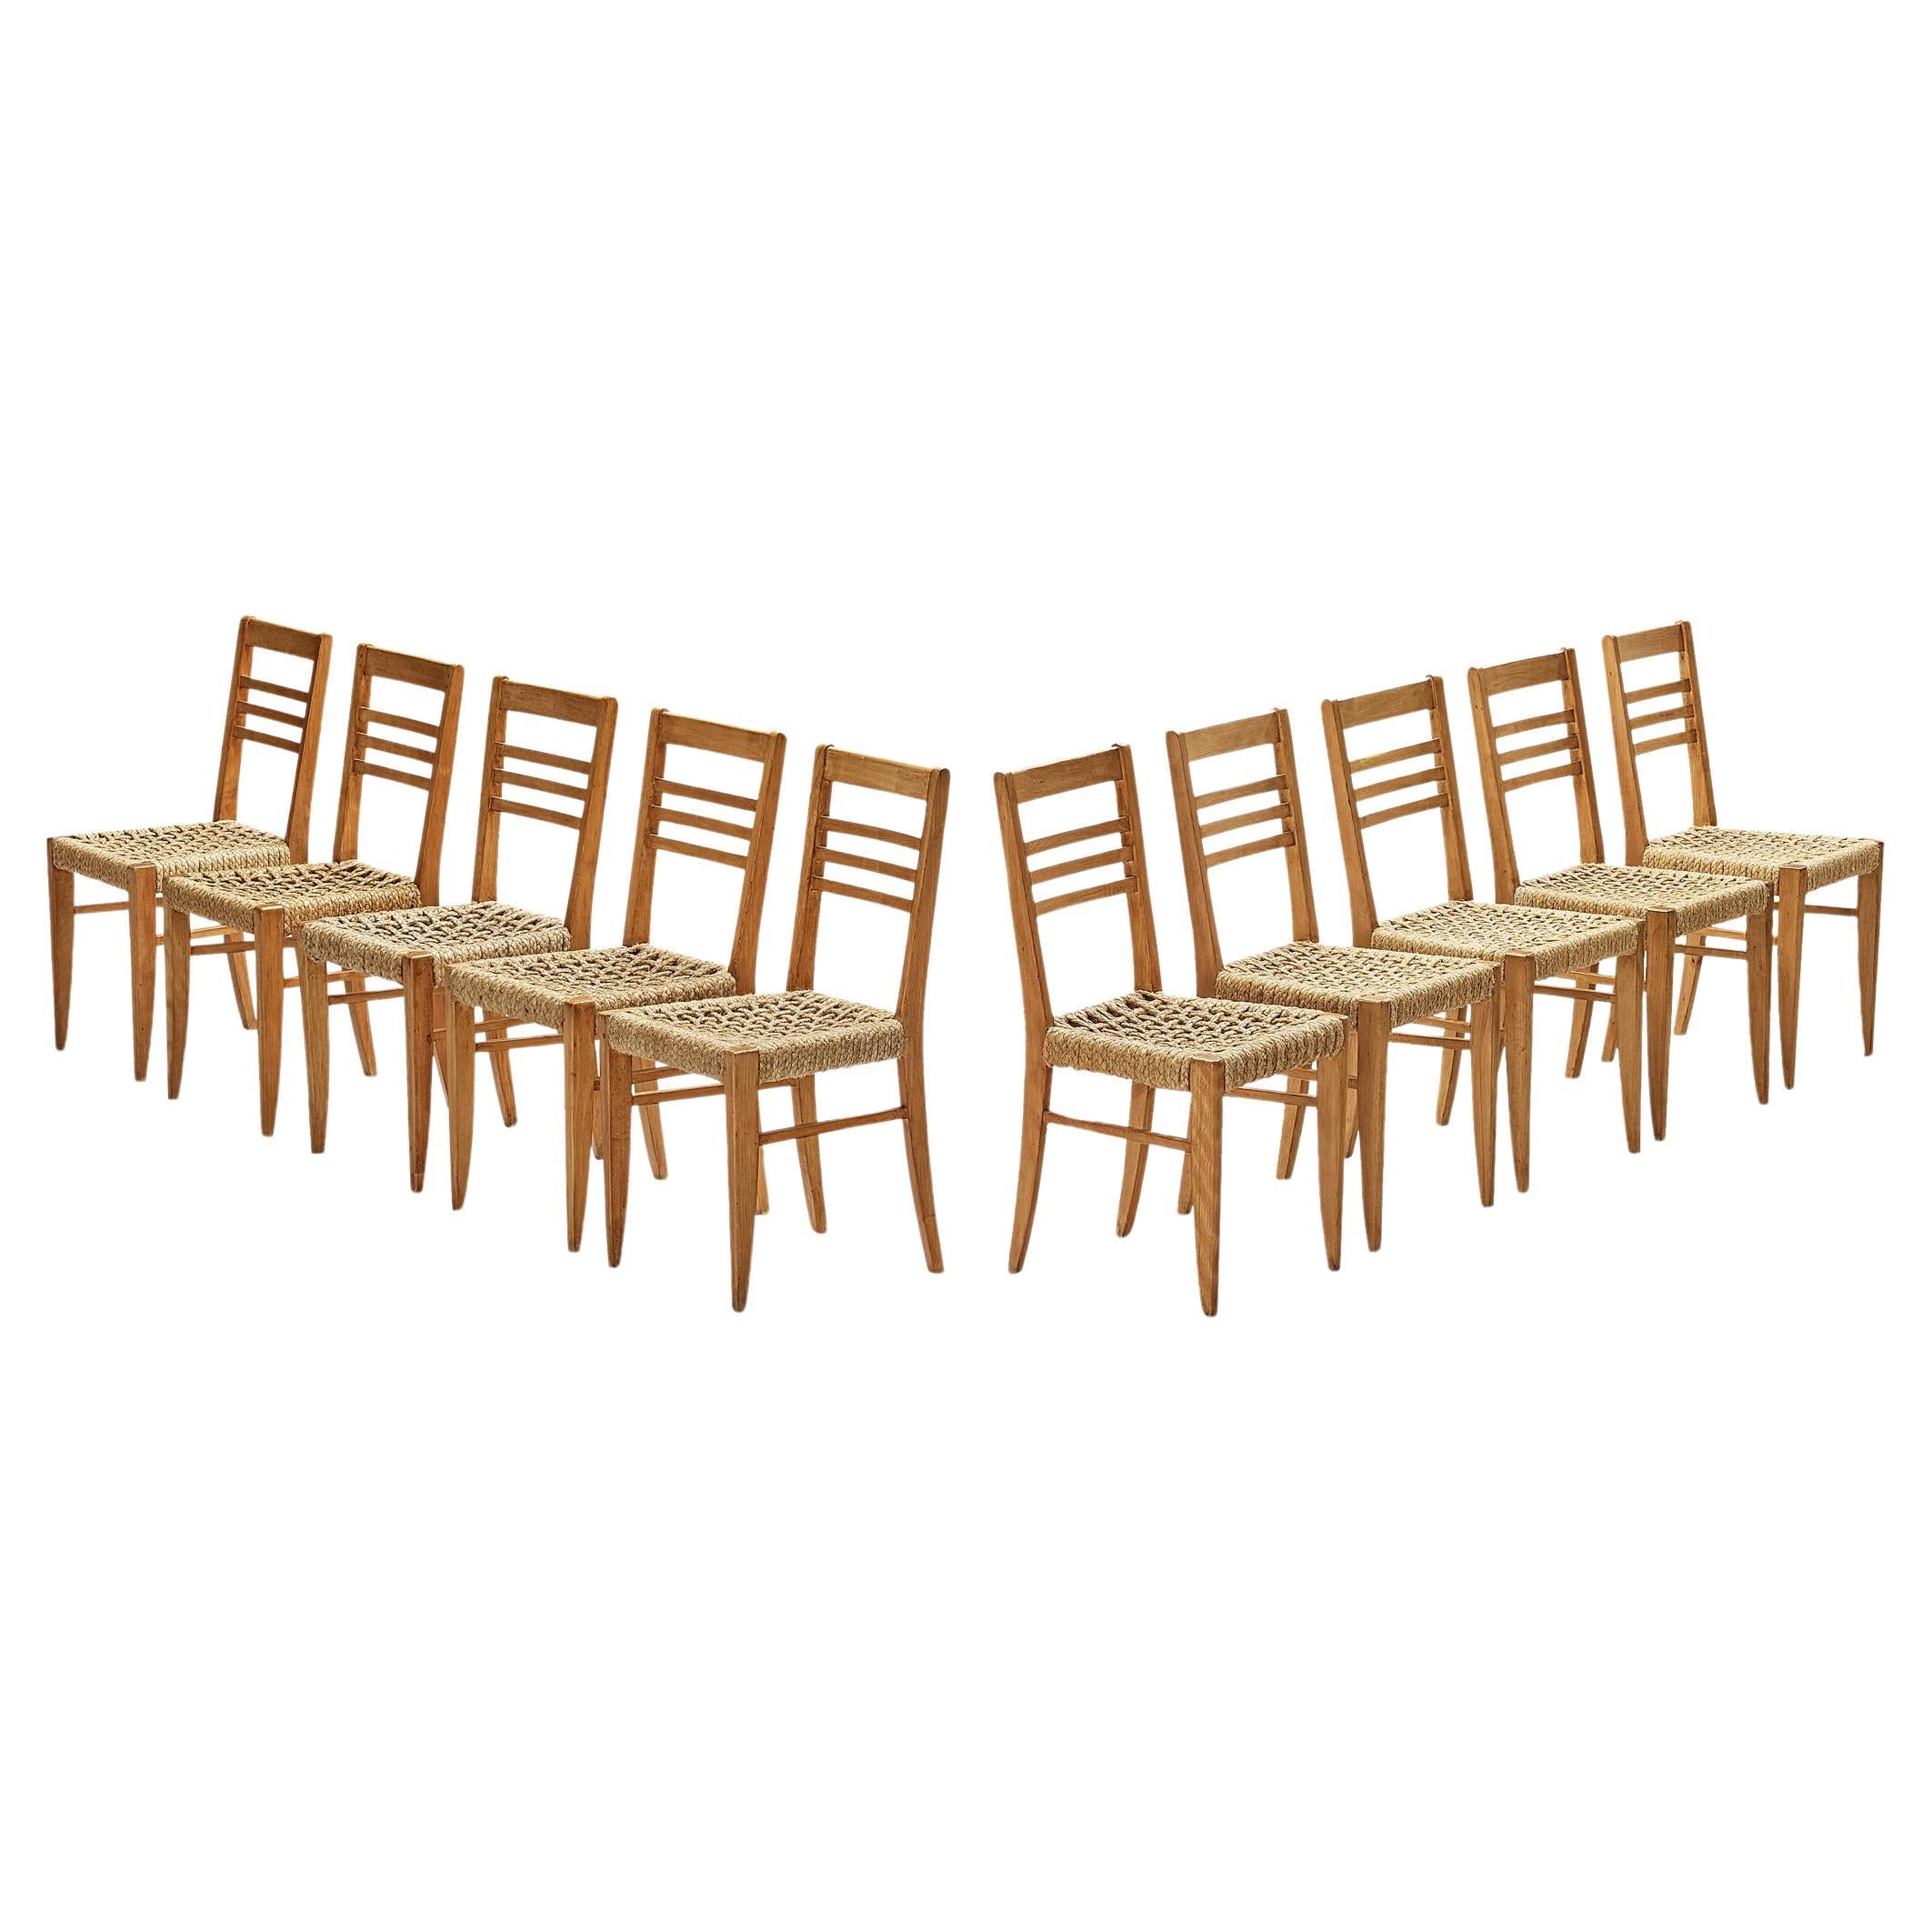 Adrien Audoux & Frida Minet: Zehn Esszimmerstühle mit geflochtenem Saum 